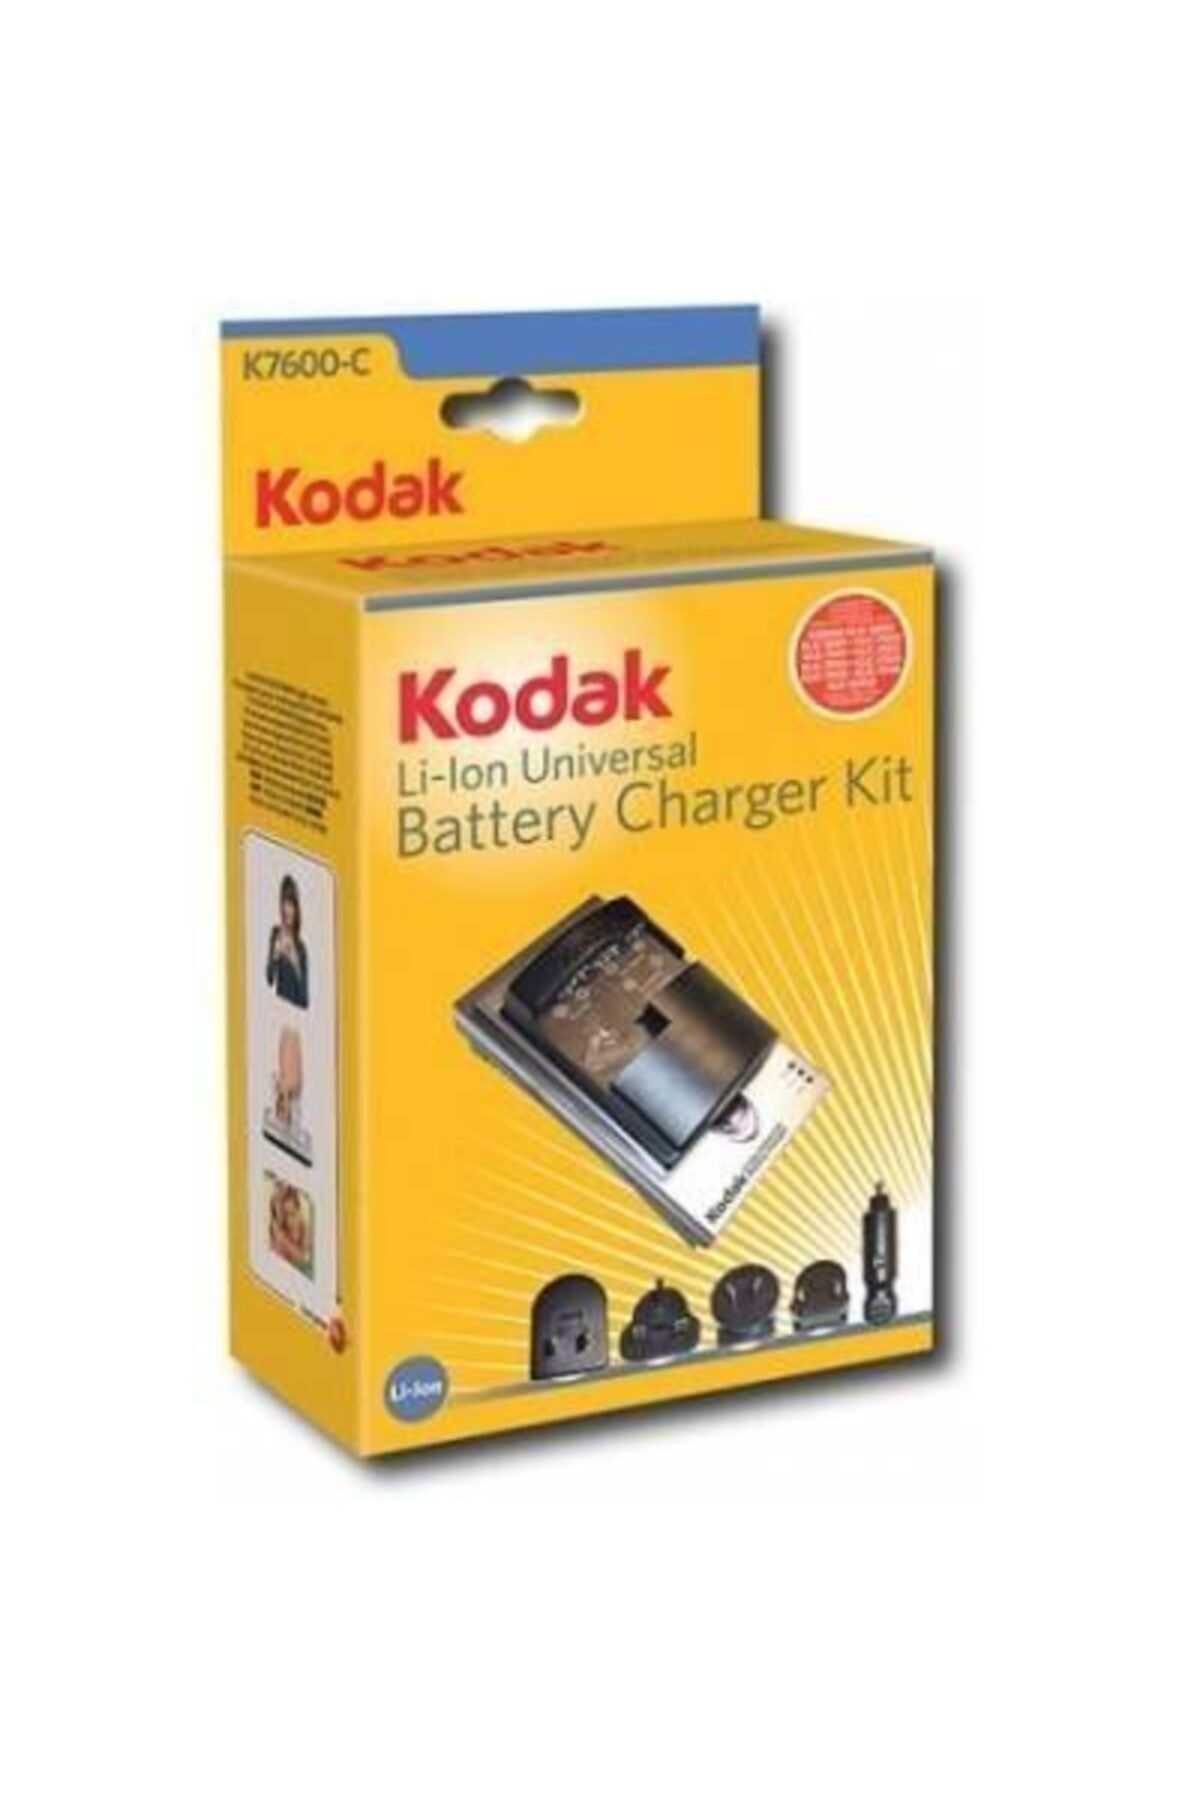 Kodak Klic-7003 Batarya Için %100 Orjinal Şarj Aleti K7600-c Araç Kiti